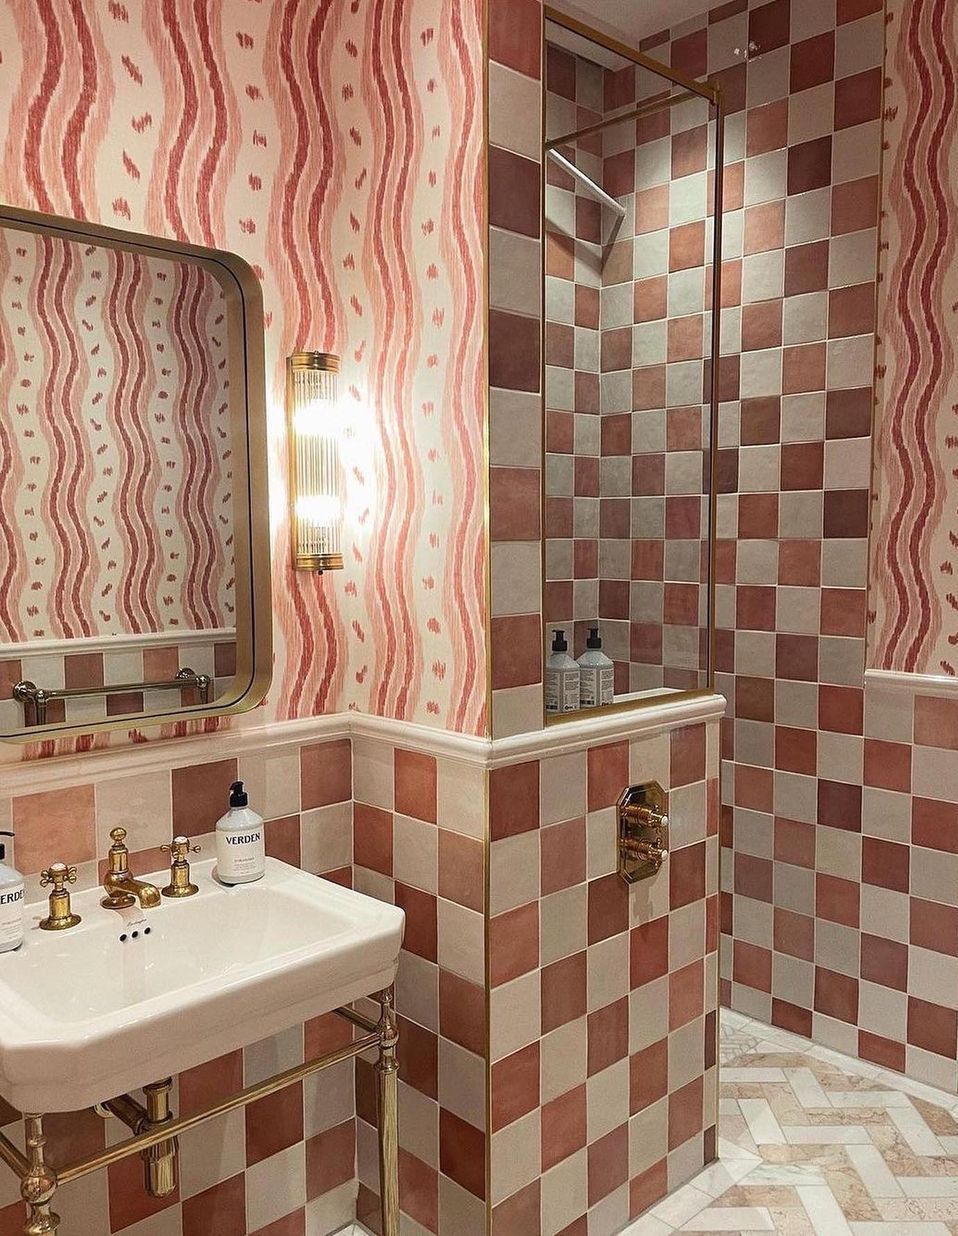 Pink bathroom tile idea checkered